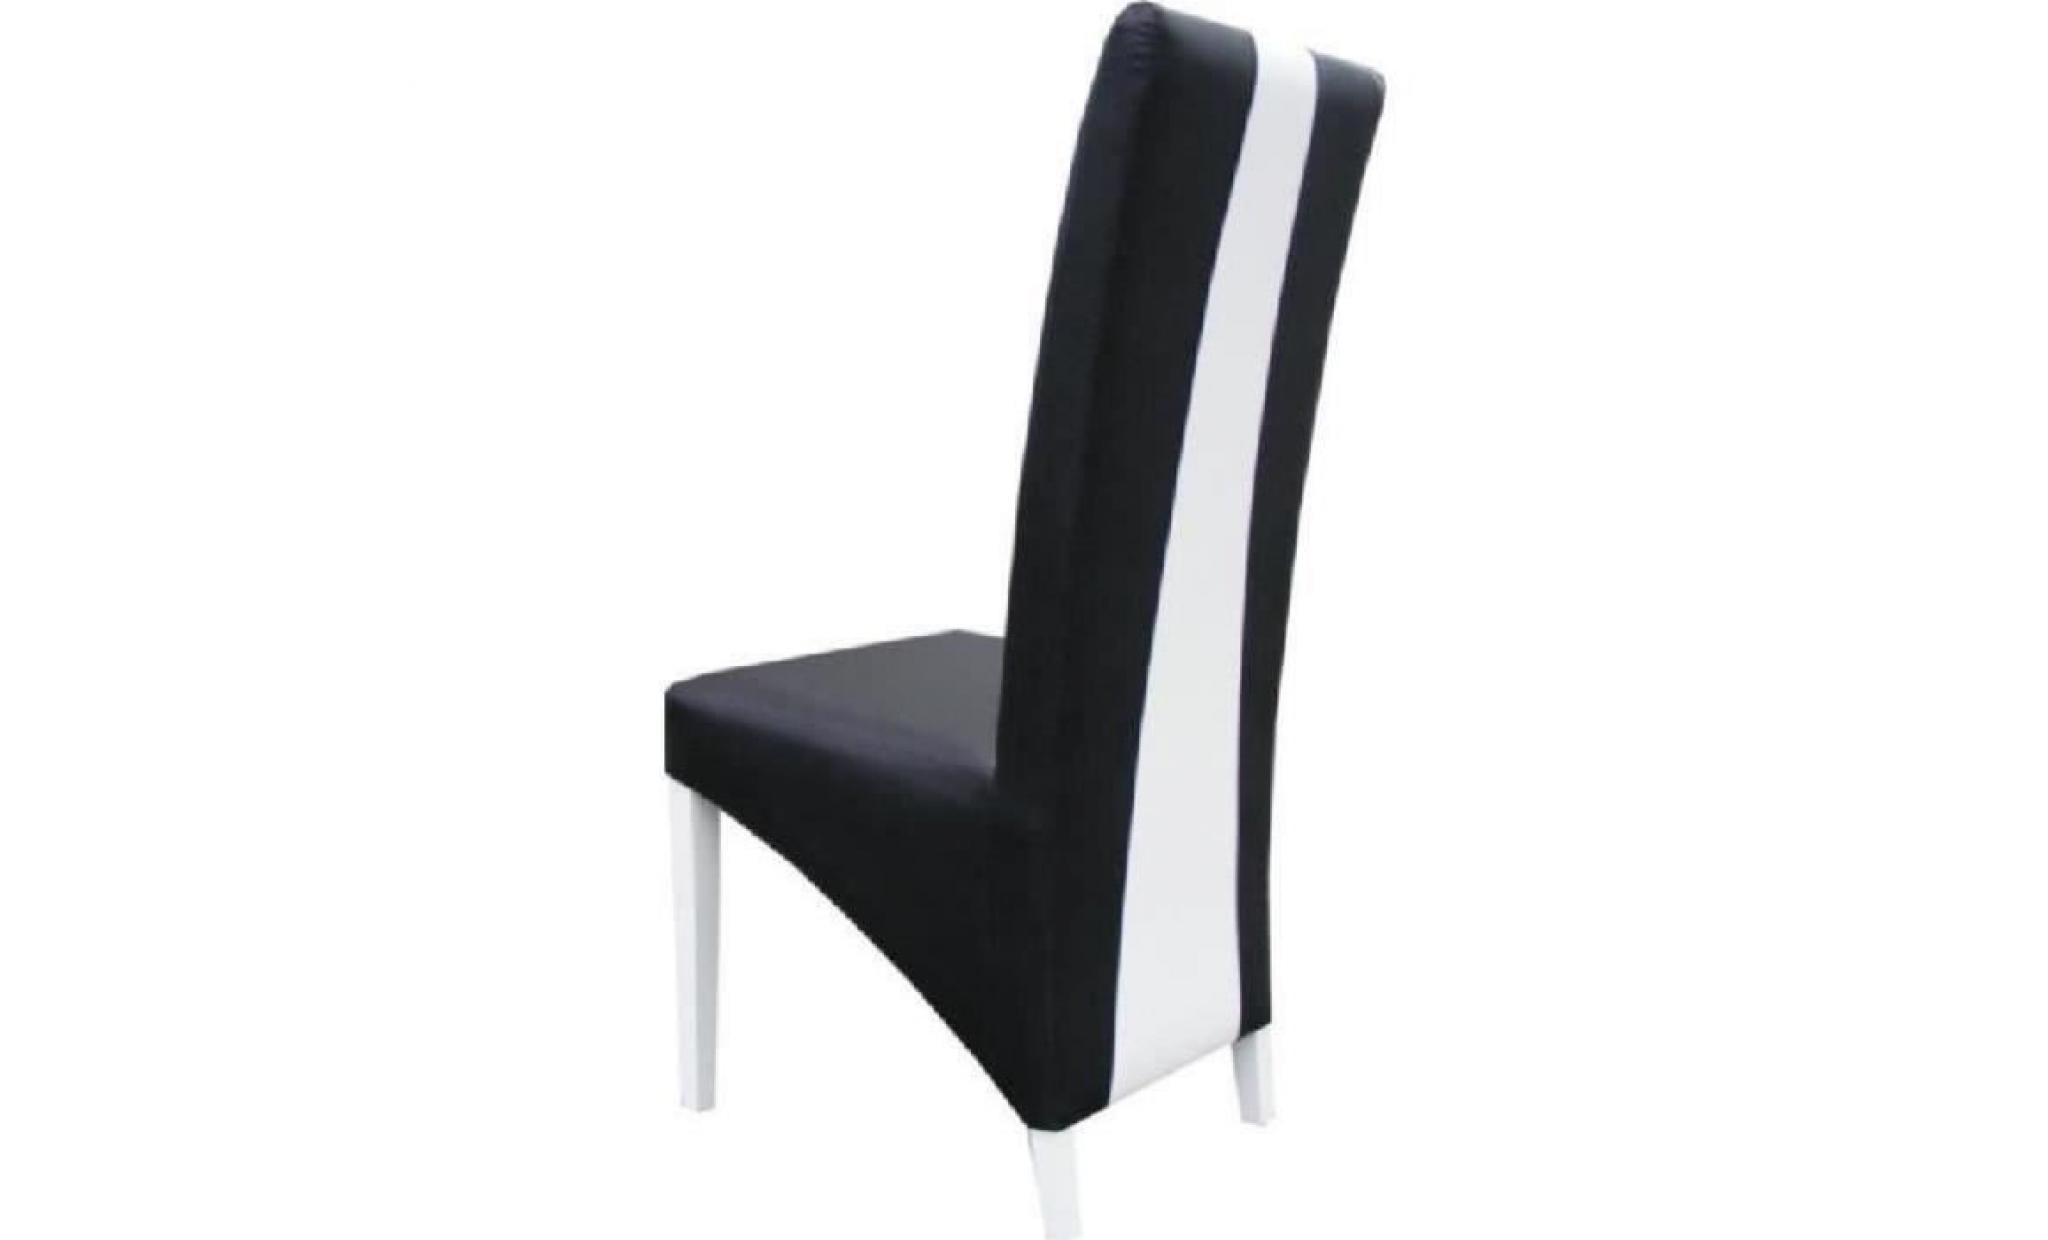 table 160 cm + 6 chaises lina. table pour salle à manger brillante noire et blanche avec 4 chaises simili cuir. design moderne pas cher